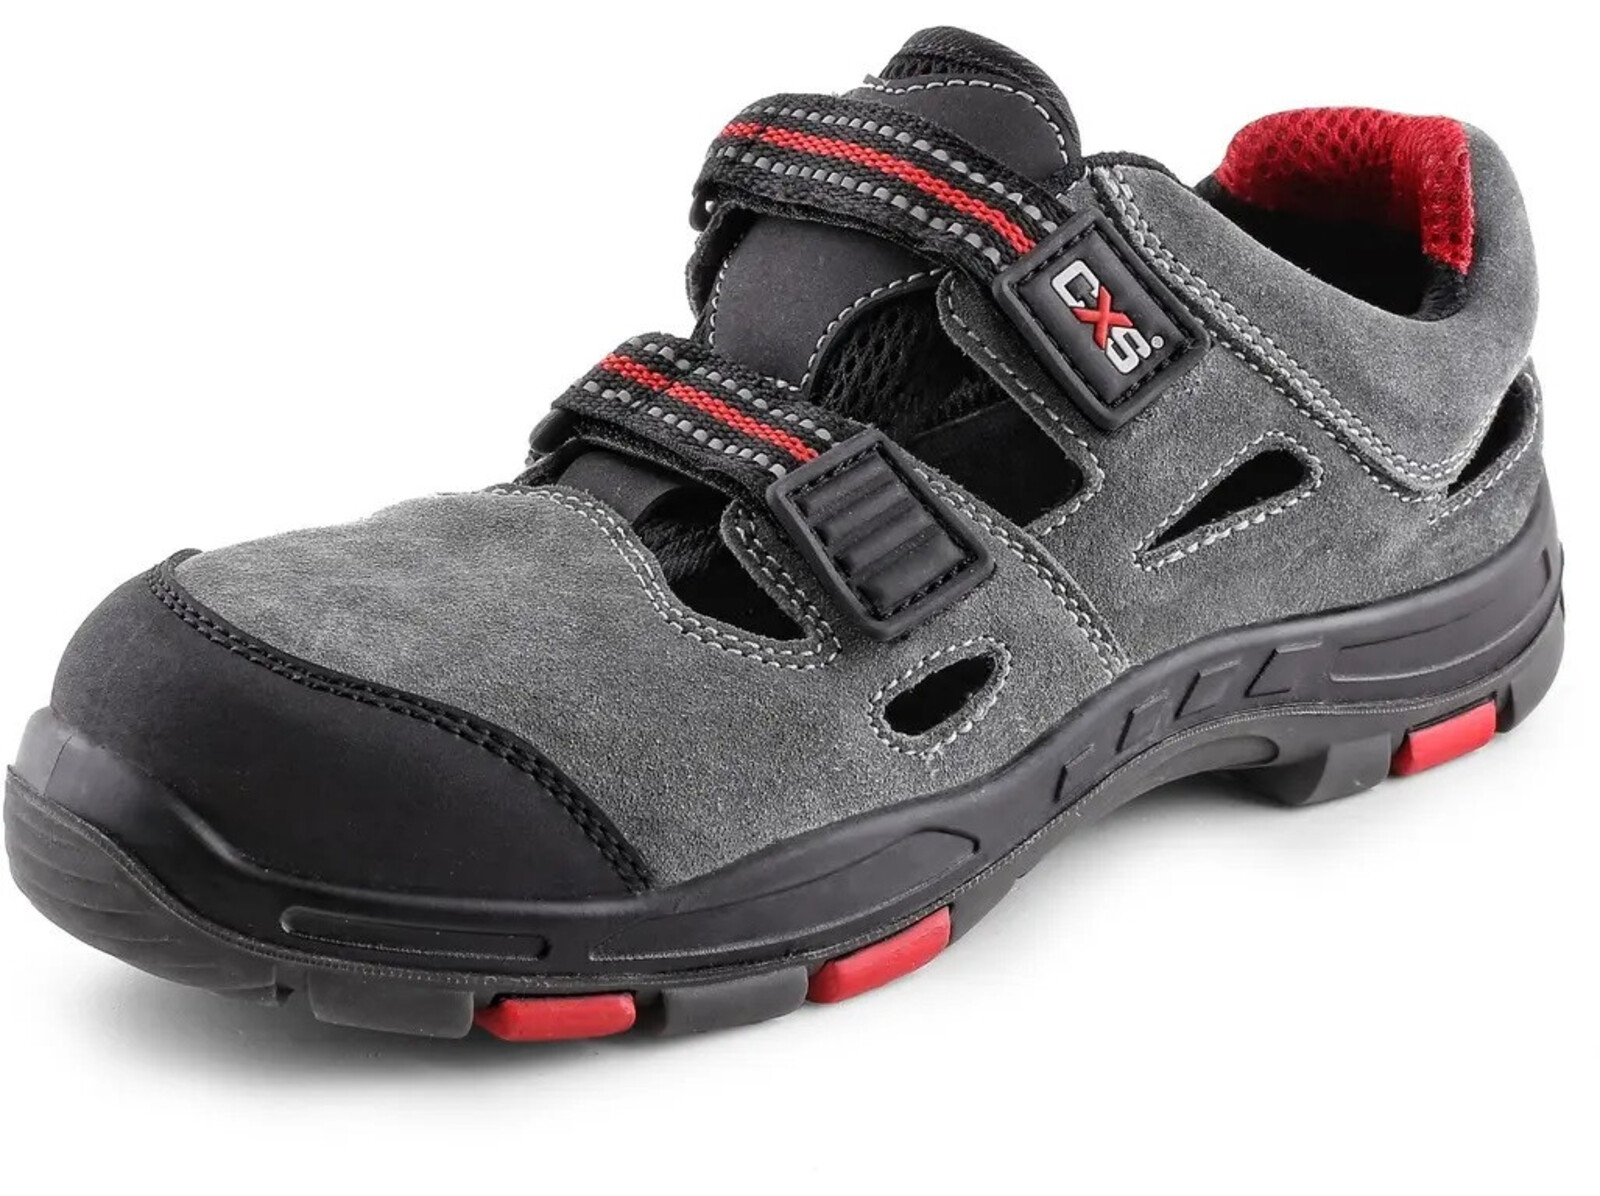 Bezpečnostné sandále CXS Rock Phyllite S1P SRA HRO MF - veľkosť: 44, farba: sivá/červená